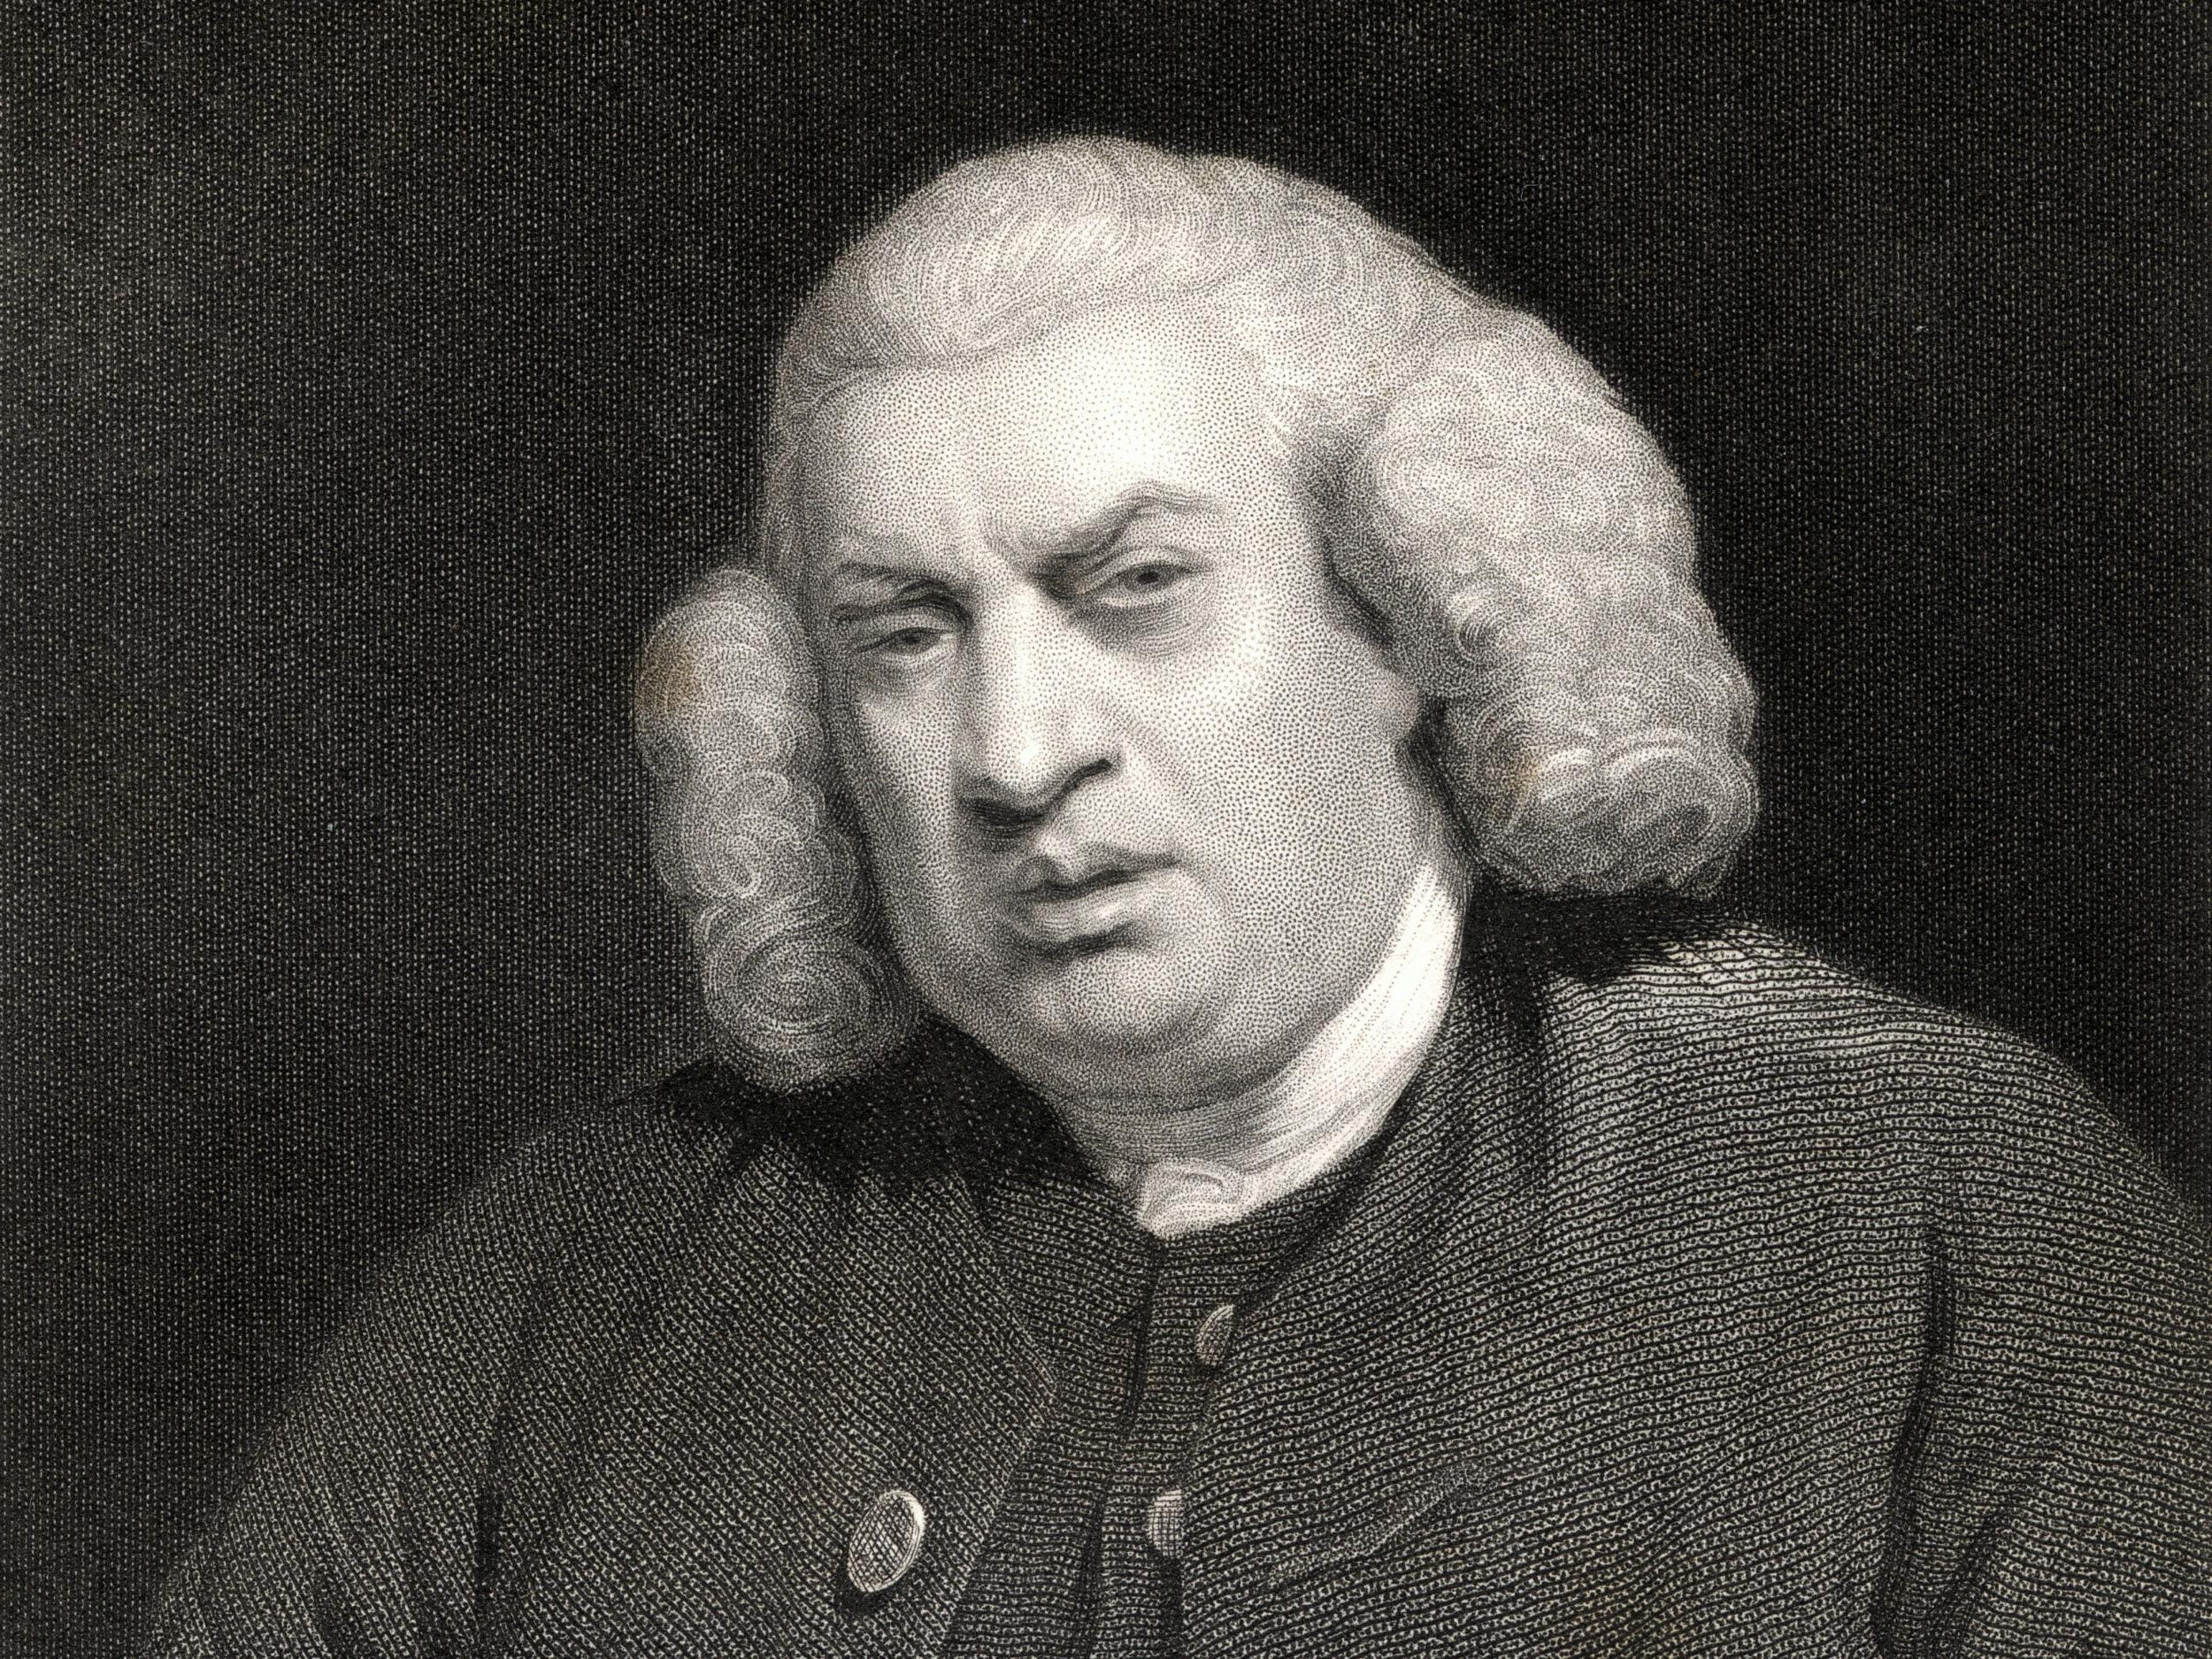 Dr Samuel Johnson